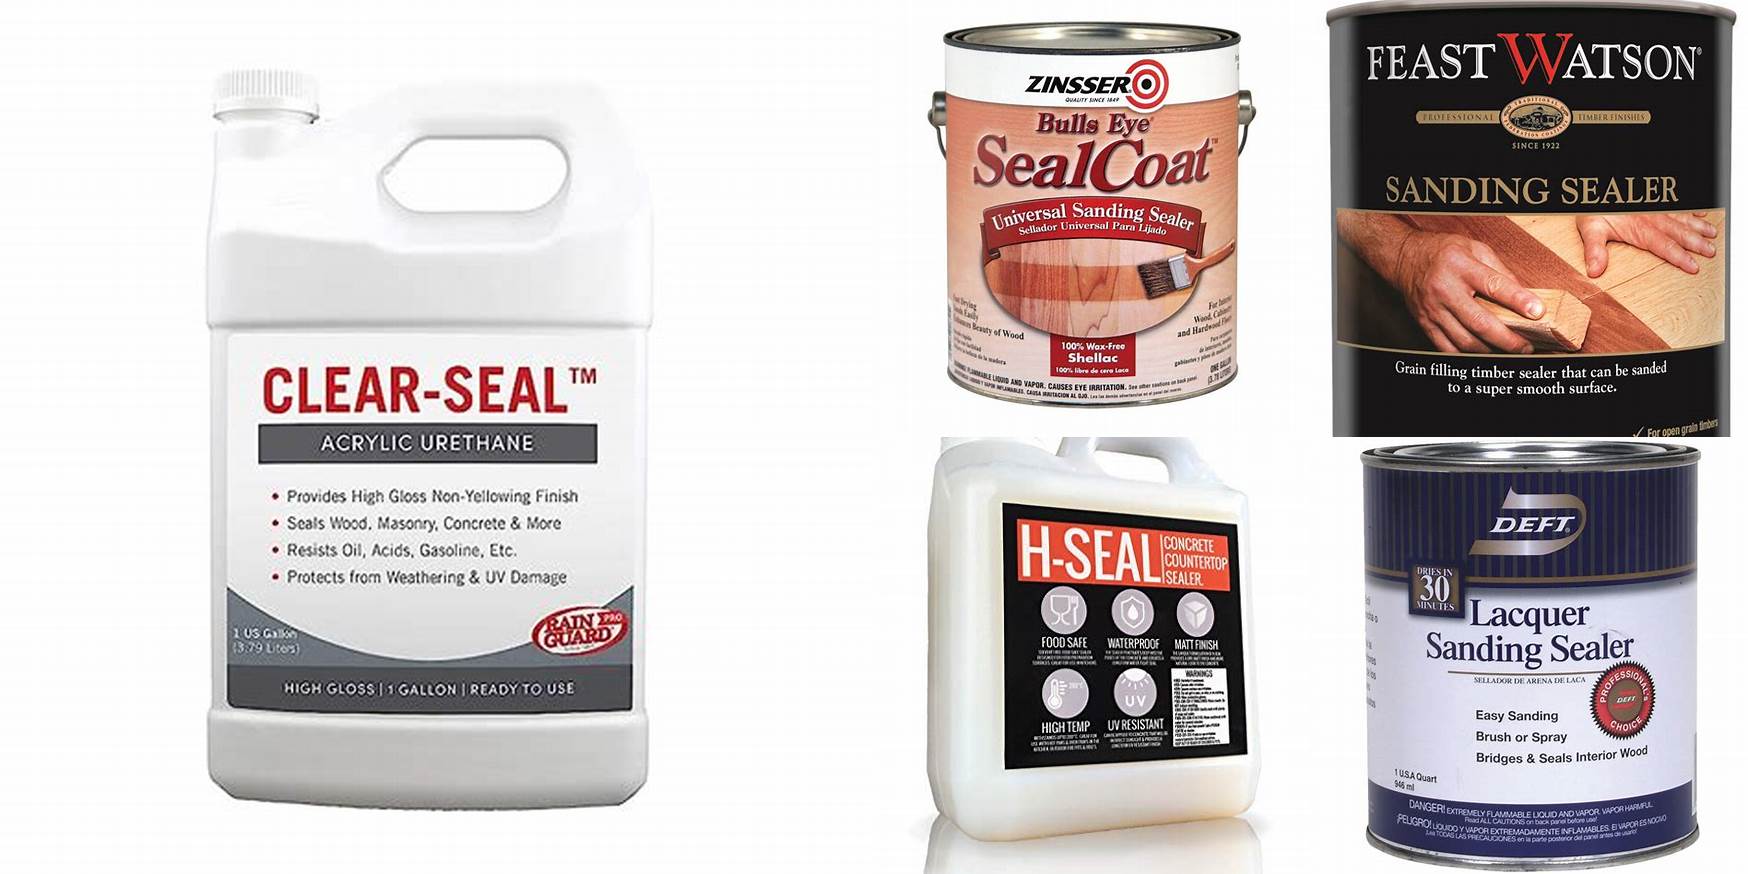 Is Sanding Sealer Food Safe